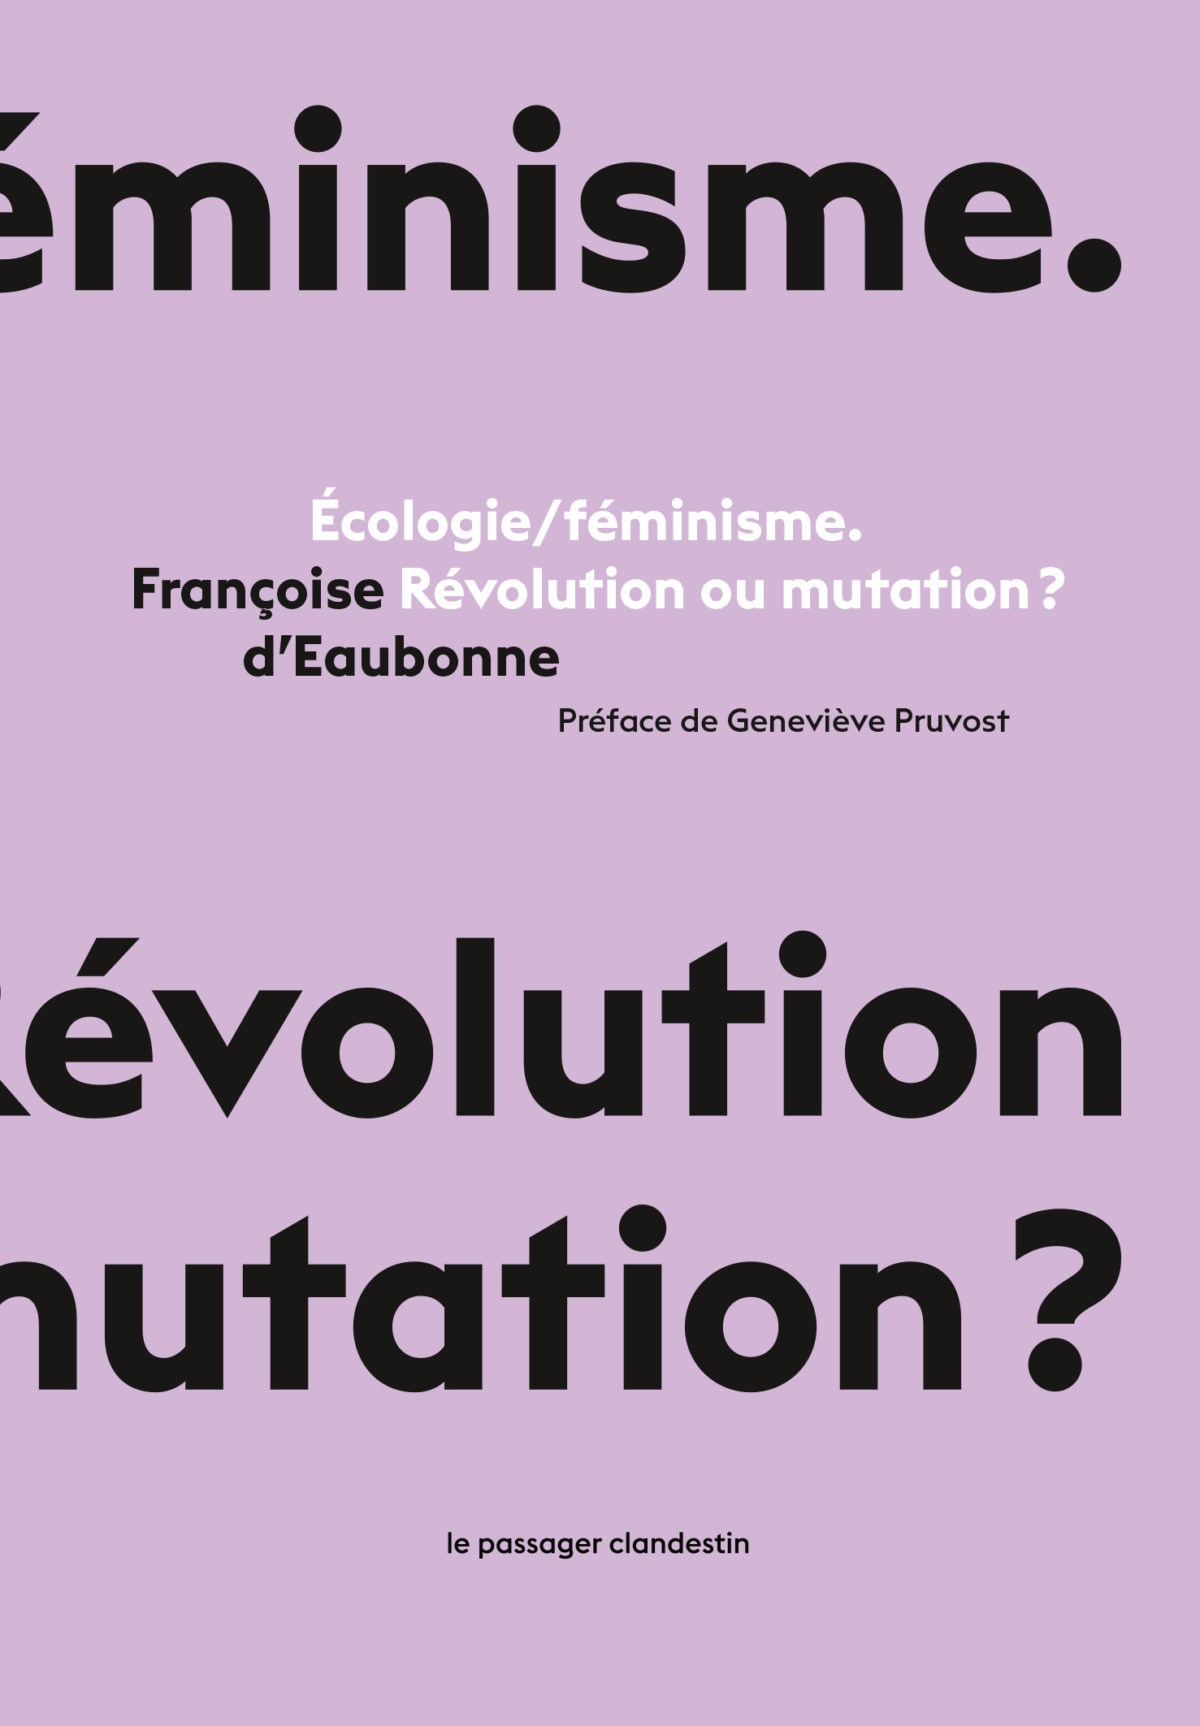 Écologie/féminisme. Révolution ou mutation ?